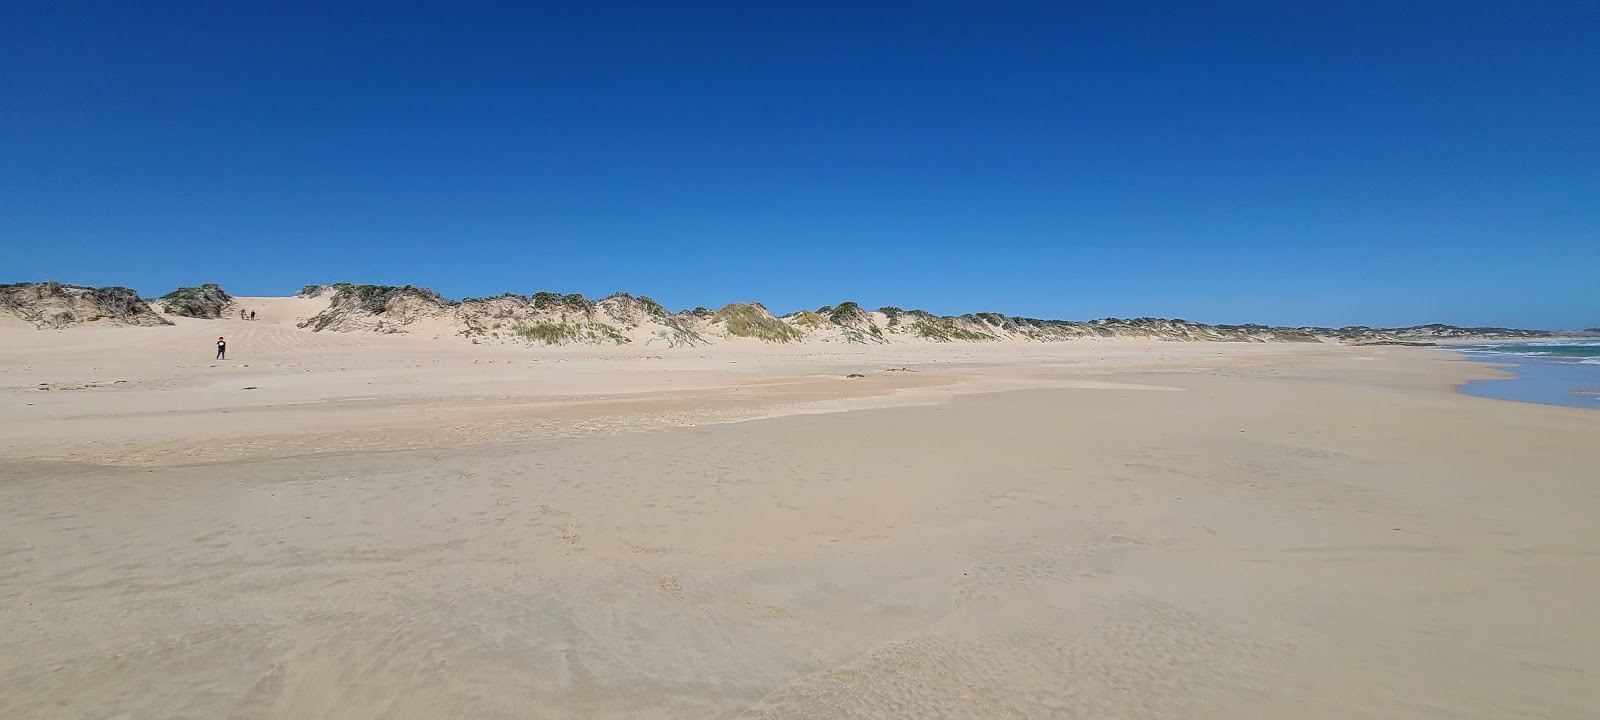 Fotografie cu Back Beach cu o suprafață de apă pură albastră